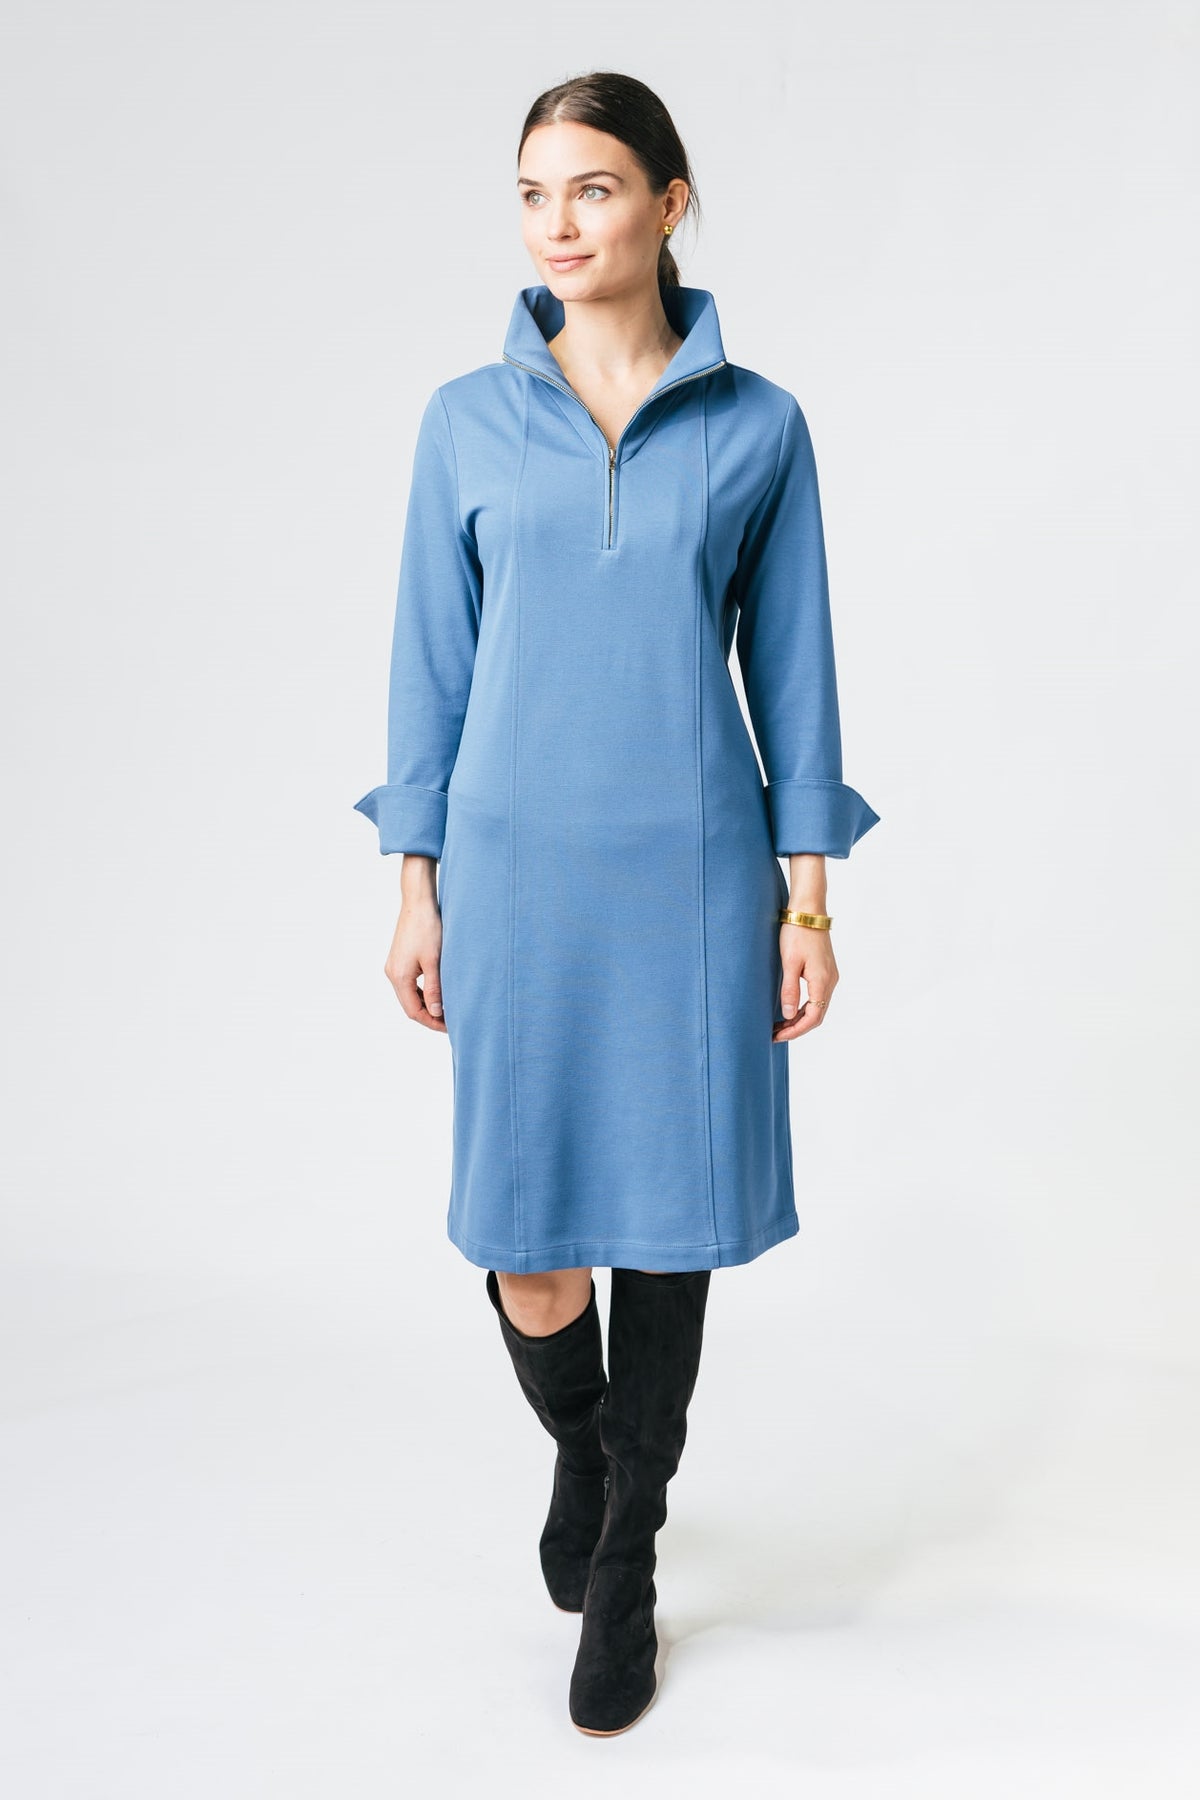 39” High Zip Collar Ponte Dress with Seam Details Amélline